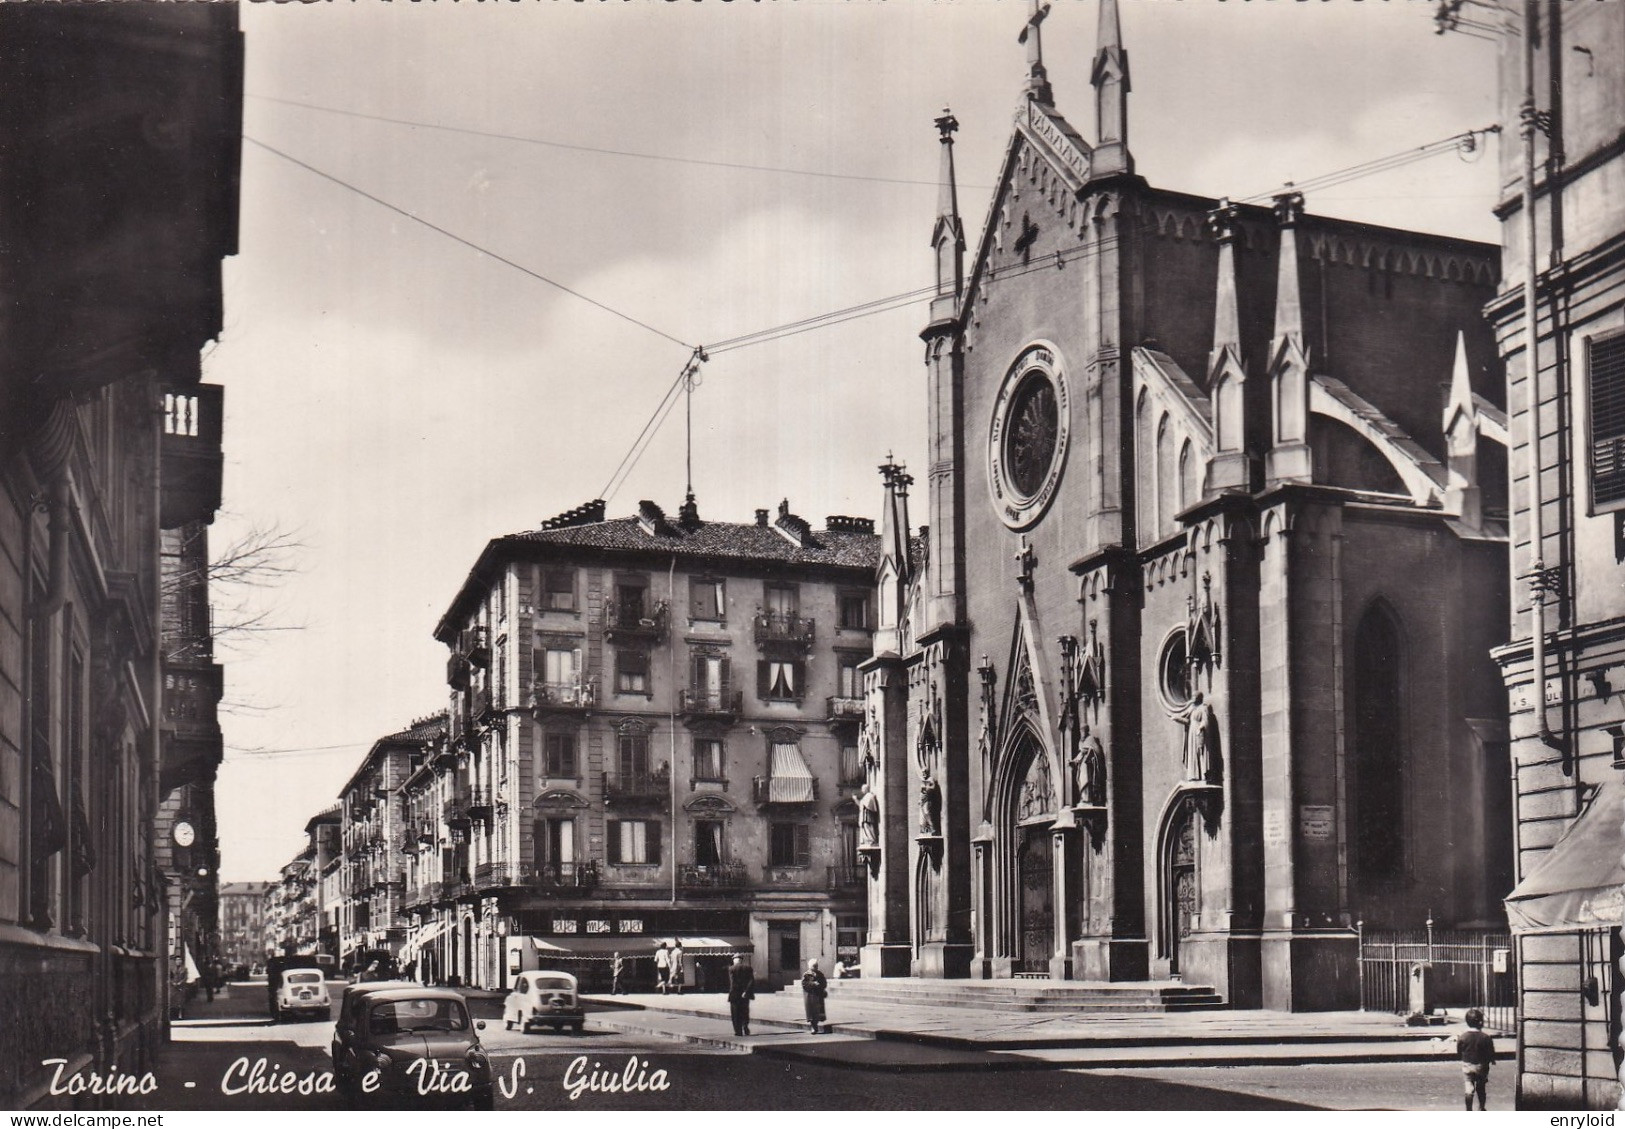 Torino Torino Chiesa E Via Santa Giulia - Andere Monumente & Gebäude